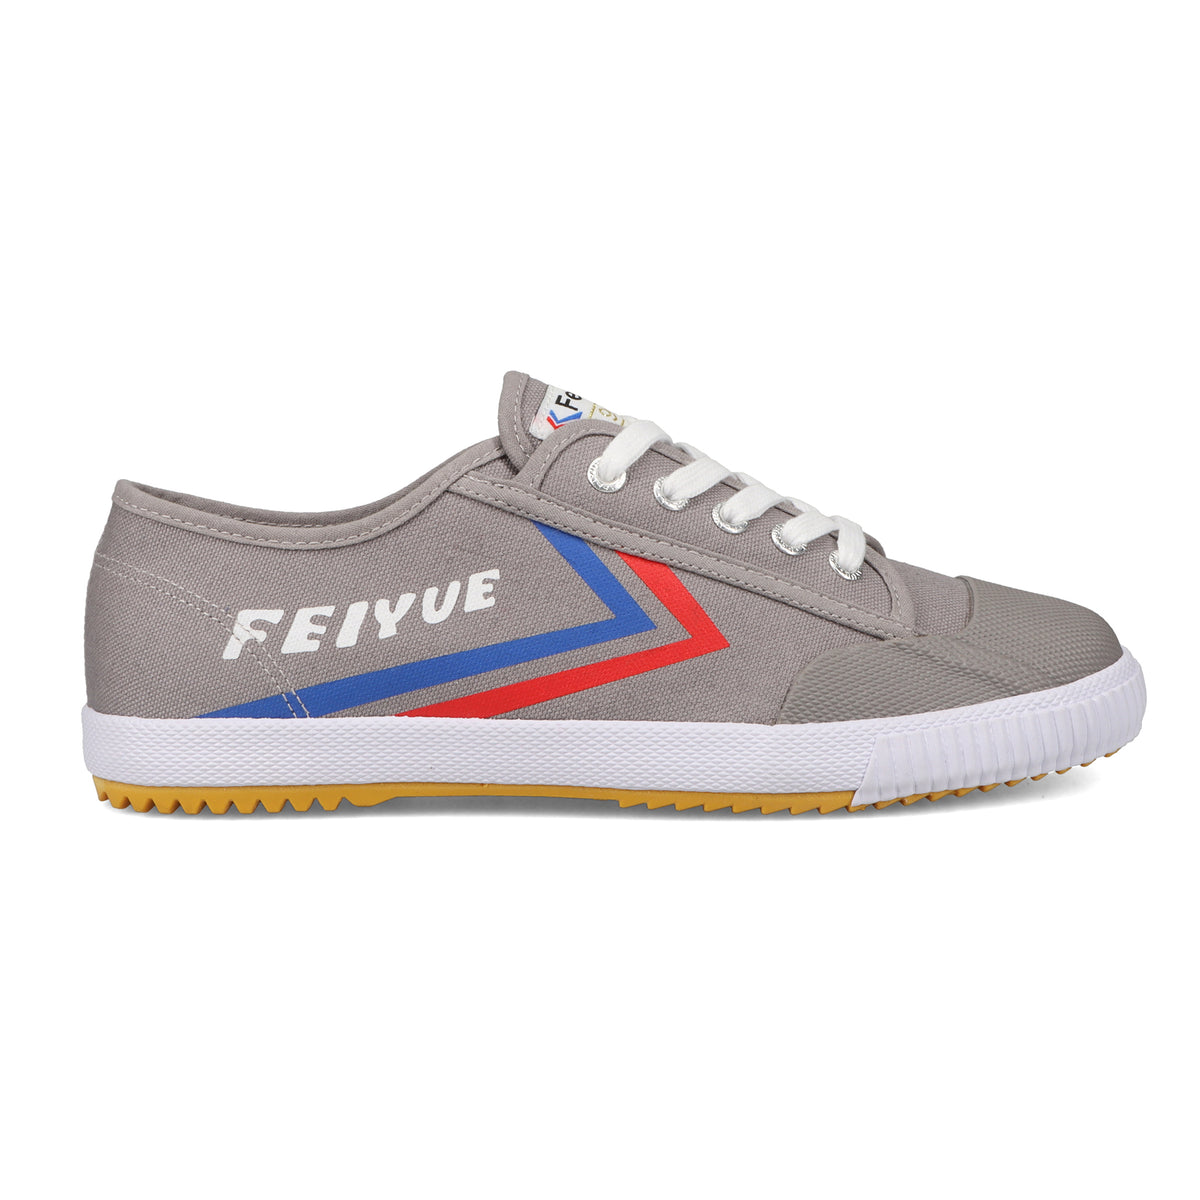 Feiyue Shoe Review 